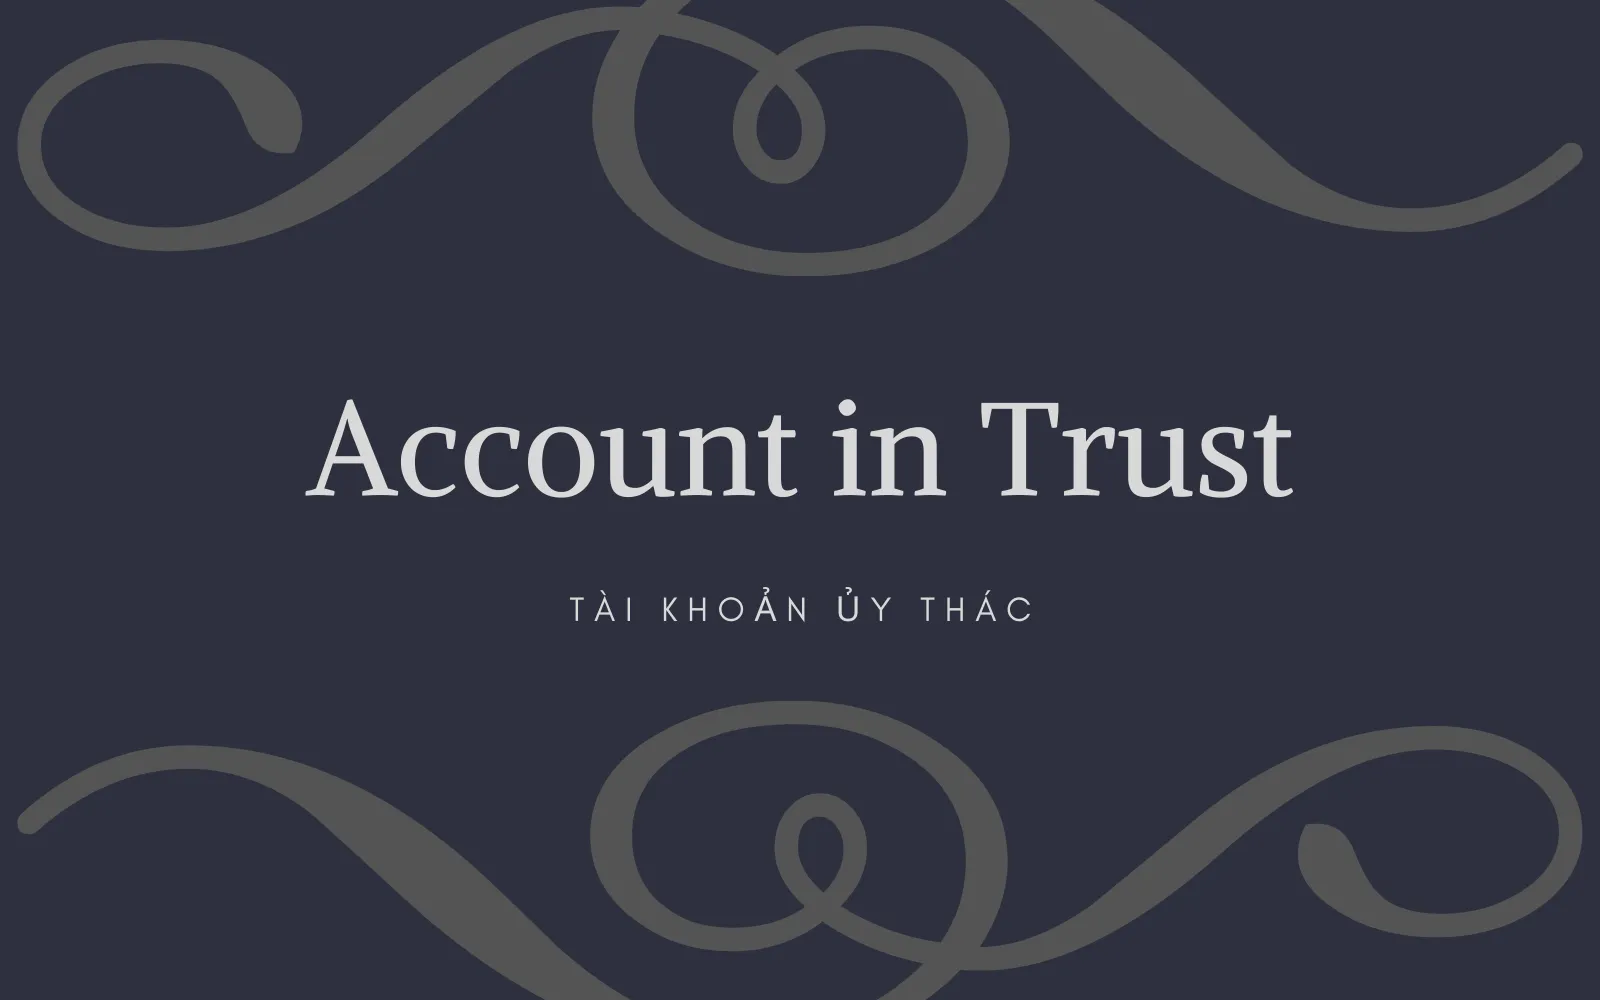 Tài khoản ủy thác (Account in Trust) là gì? Cách thức hoạt động của Tài khoản ủy thác - Ảnh 1.